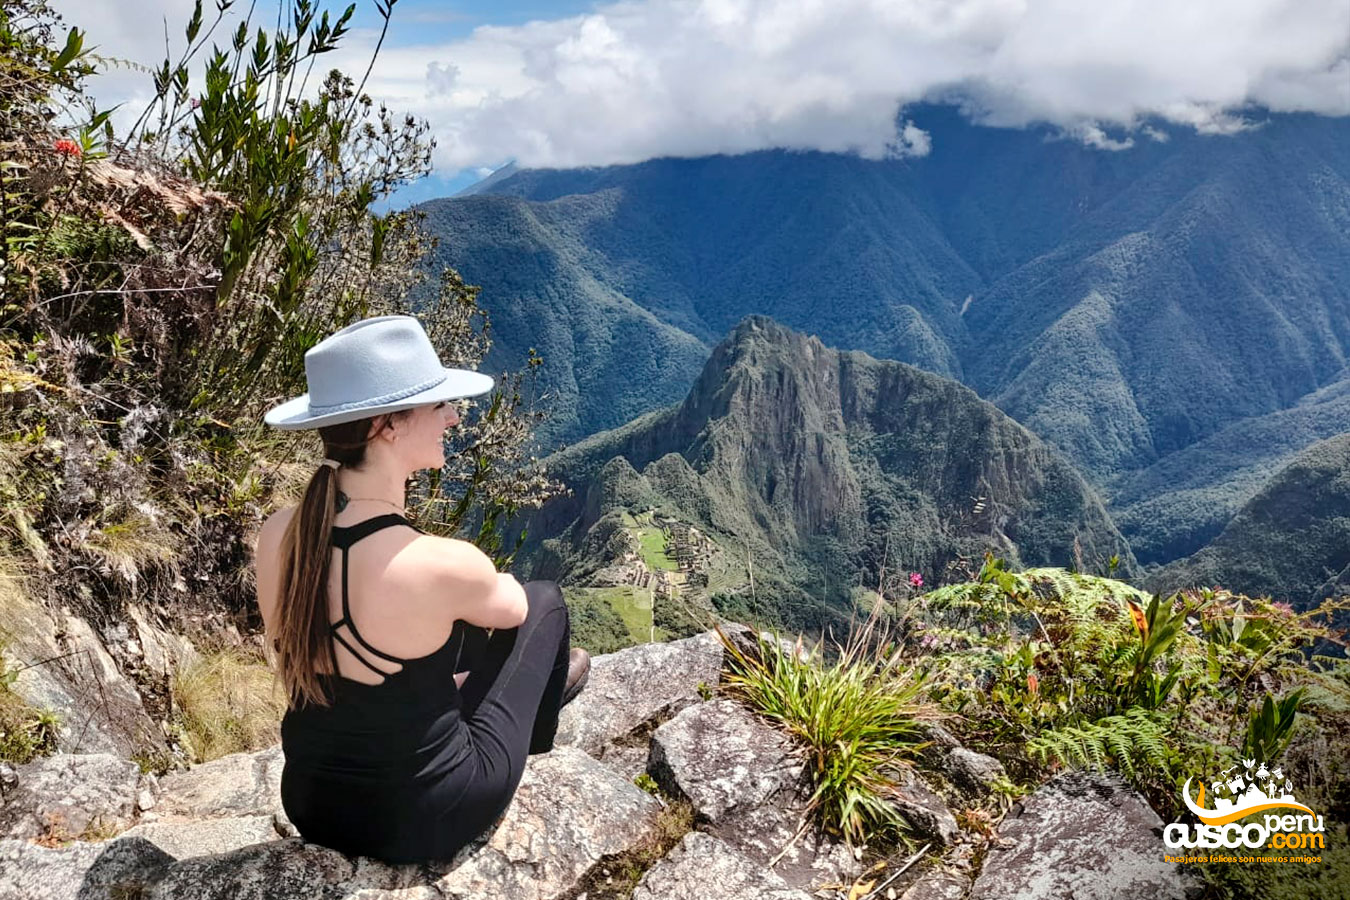 Vista desde el mirador de la montaña Machu Picchu. Fuente: CuscoPeru.com